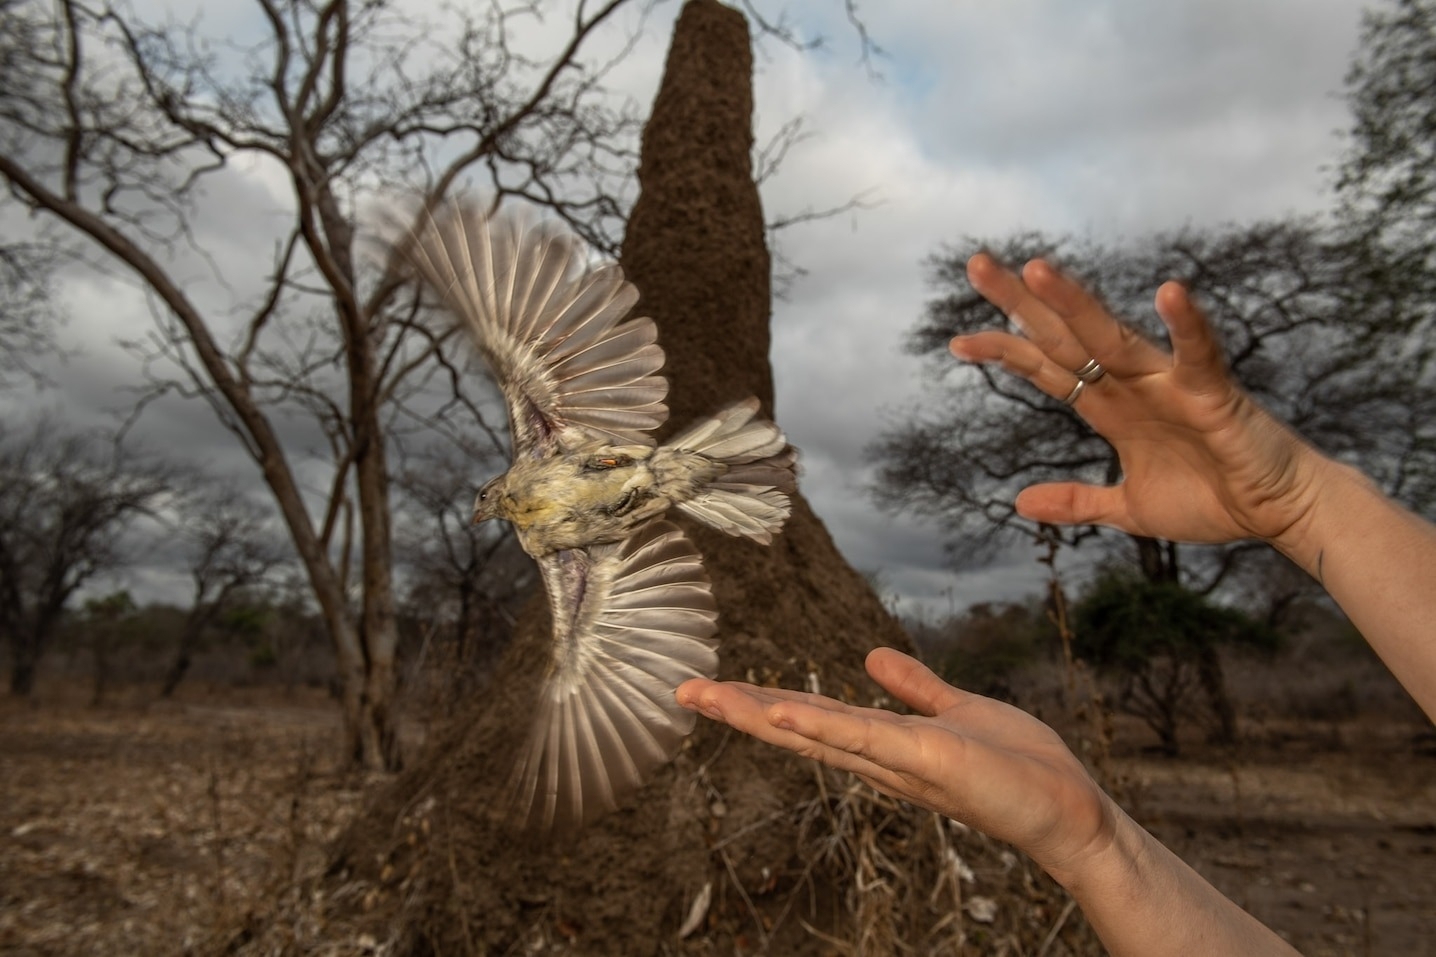 研究人員在莫三比克野放了一隻黑喉響蜜鴷。這種鳥會與在東非採集野生蜂蜜的人類互惠合作，也是野生動物與人類合作的罕見案例之一。 PHOTOGRAPH BY THOMAS PESCHAK 